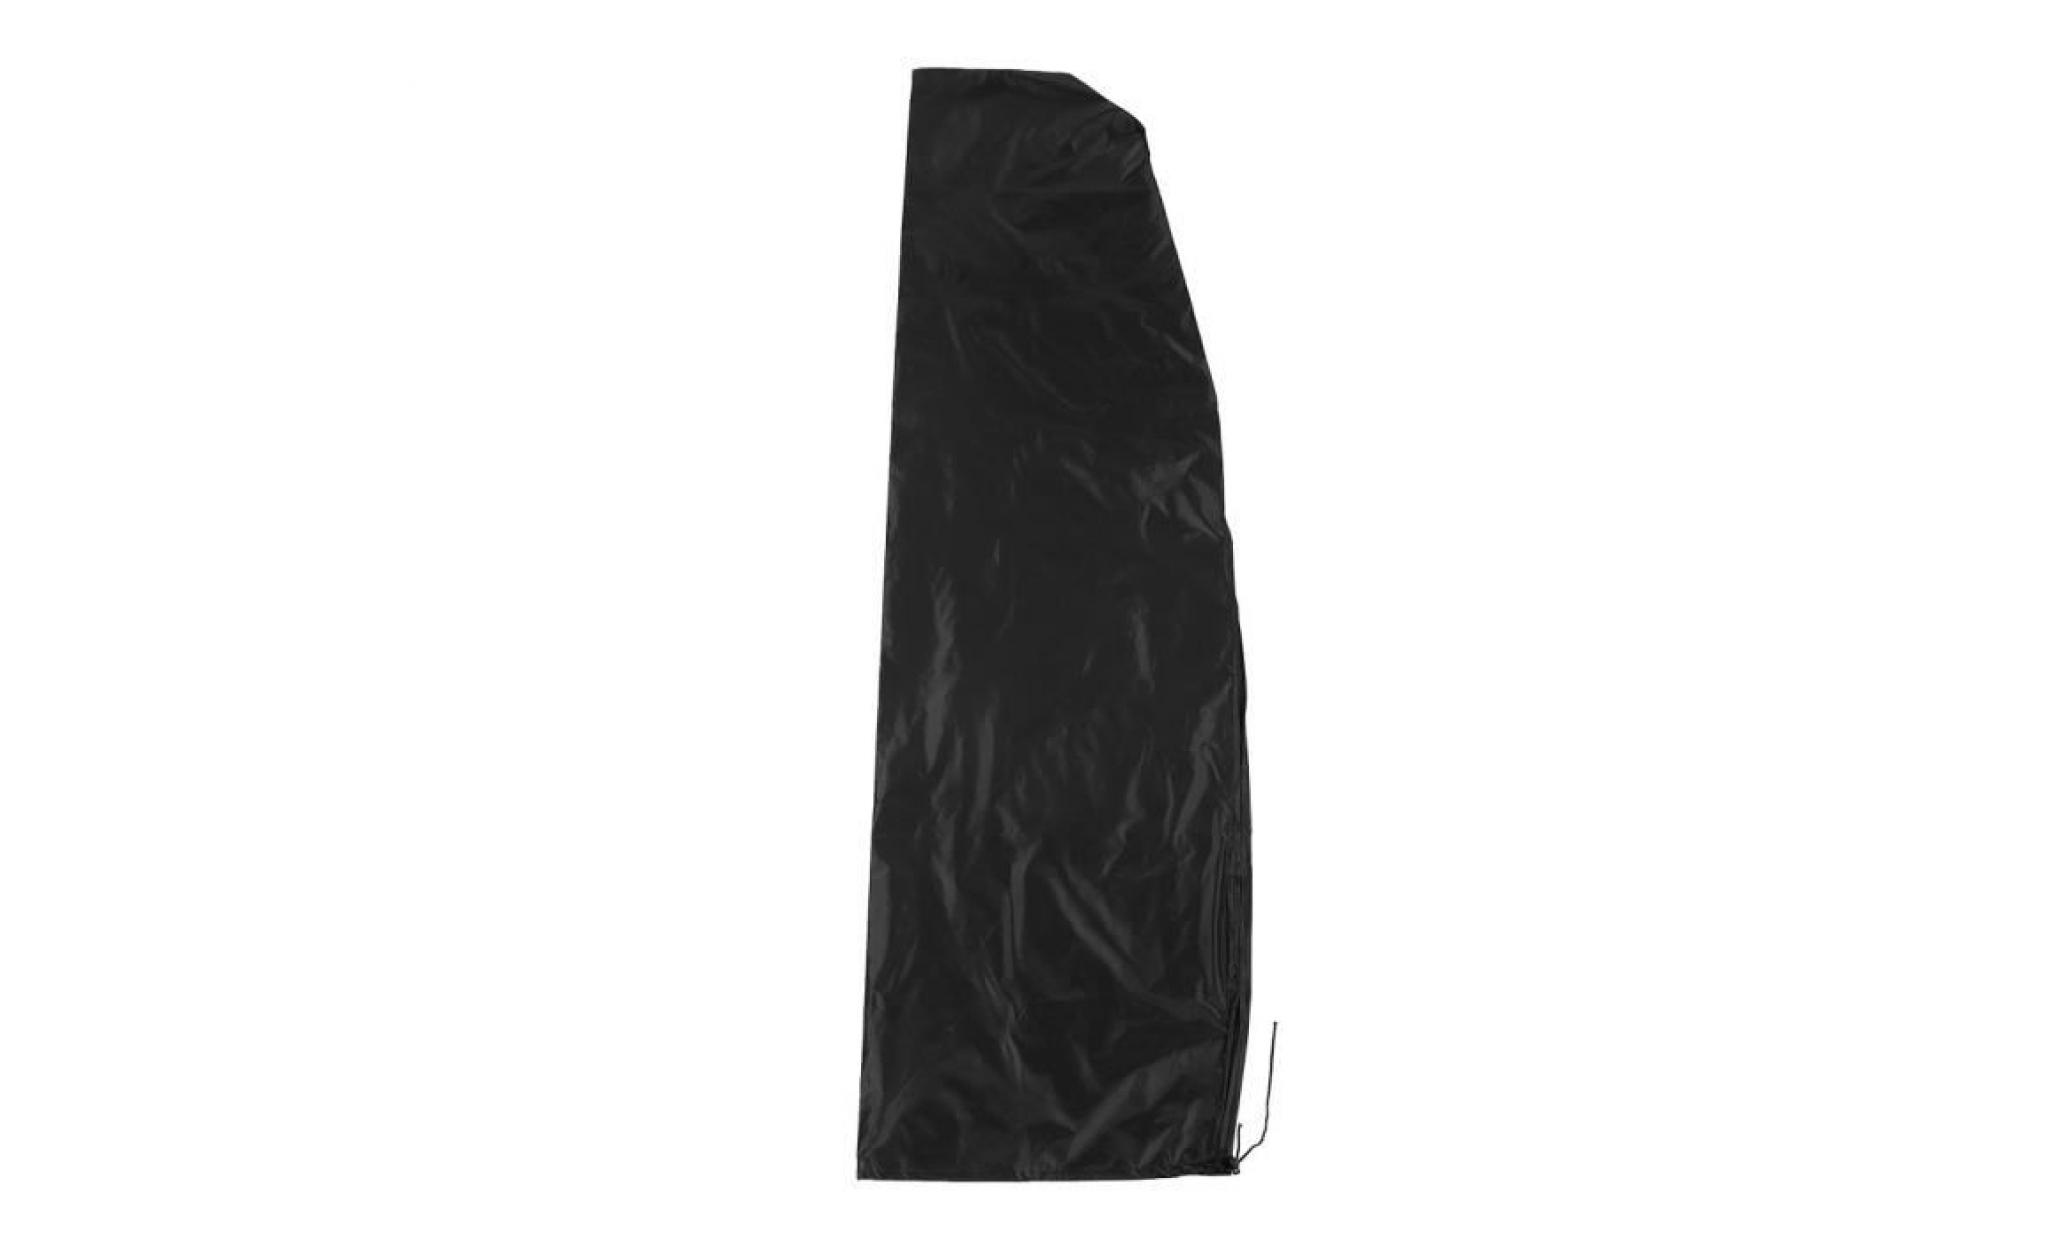 imperméable antirouille parapluie couverture oxford tissu de la table (280cm: 30 * 81 * 45cm) cy pas cher